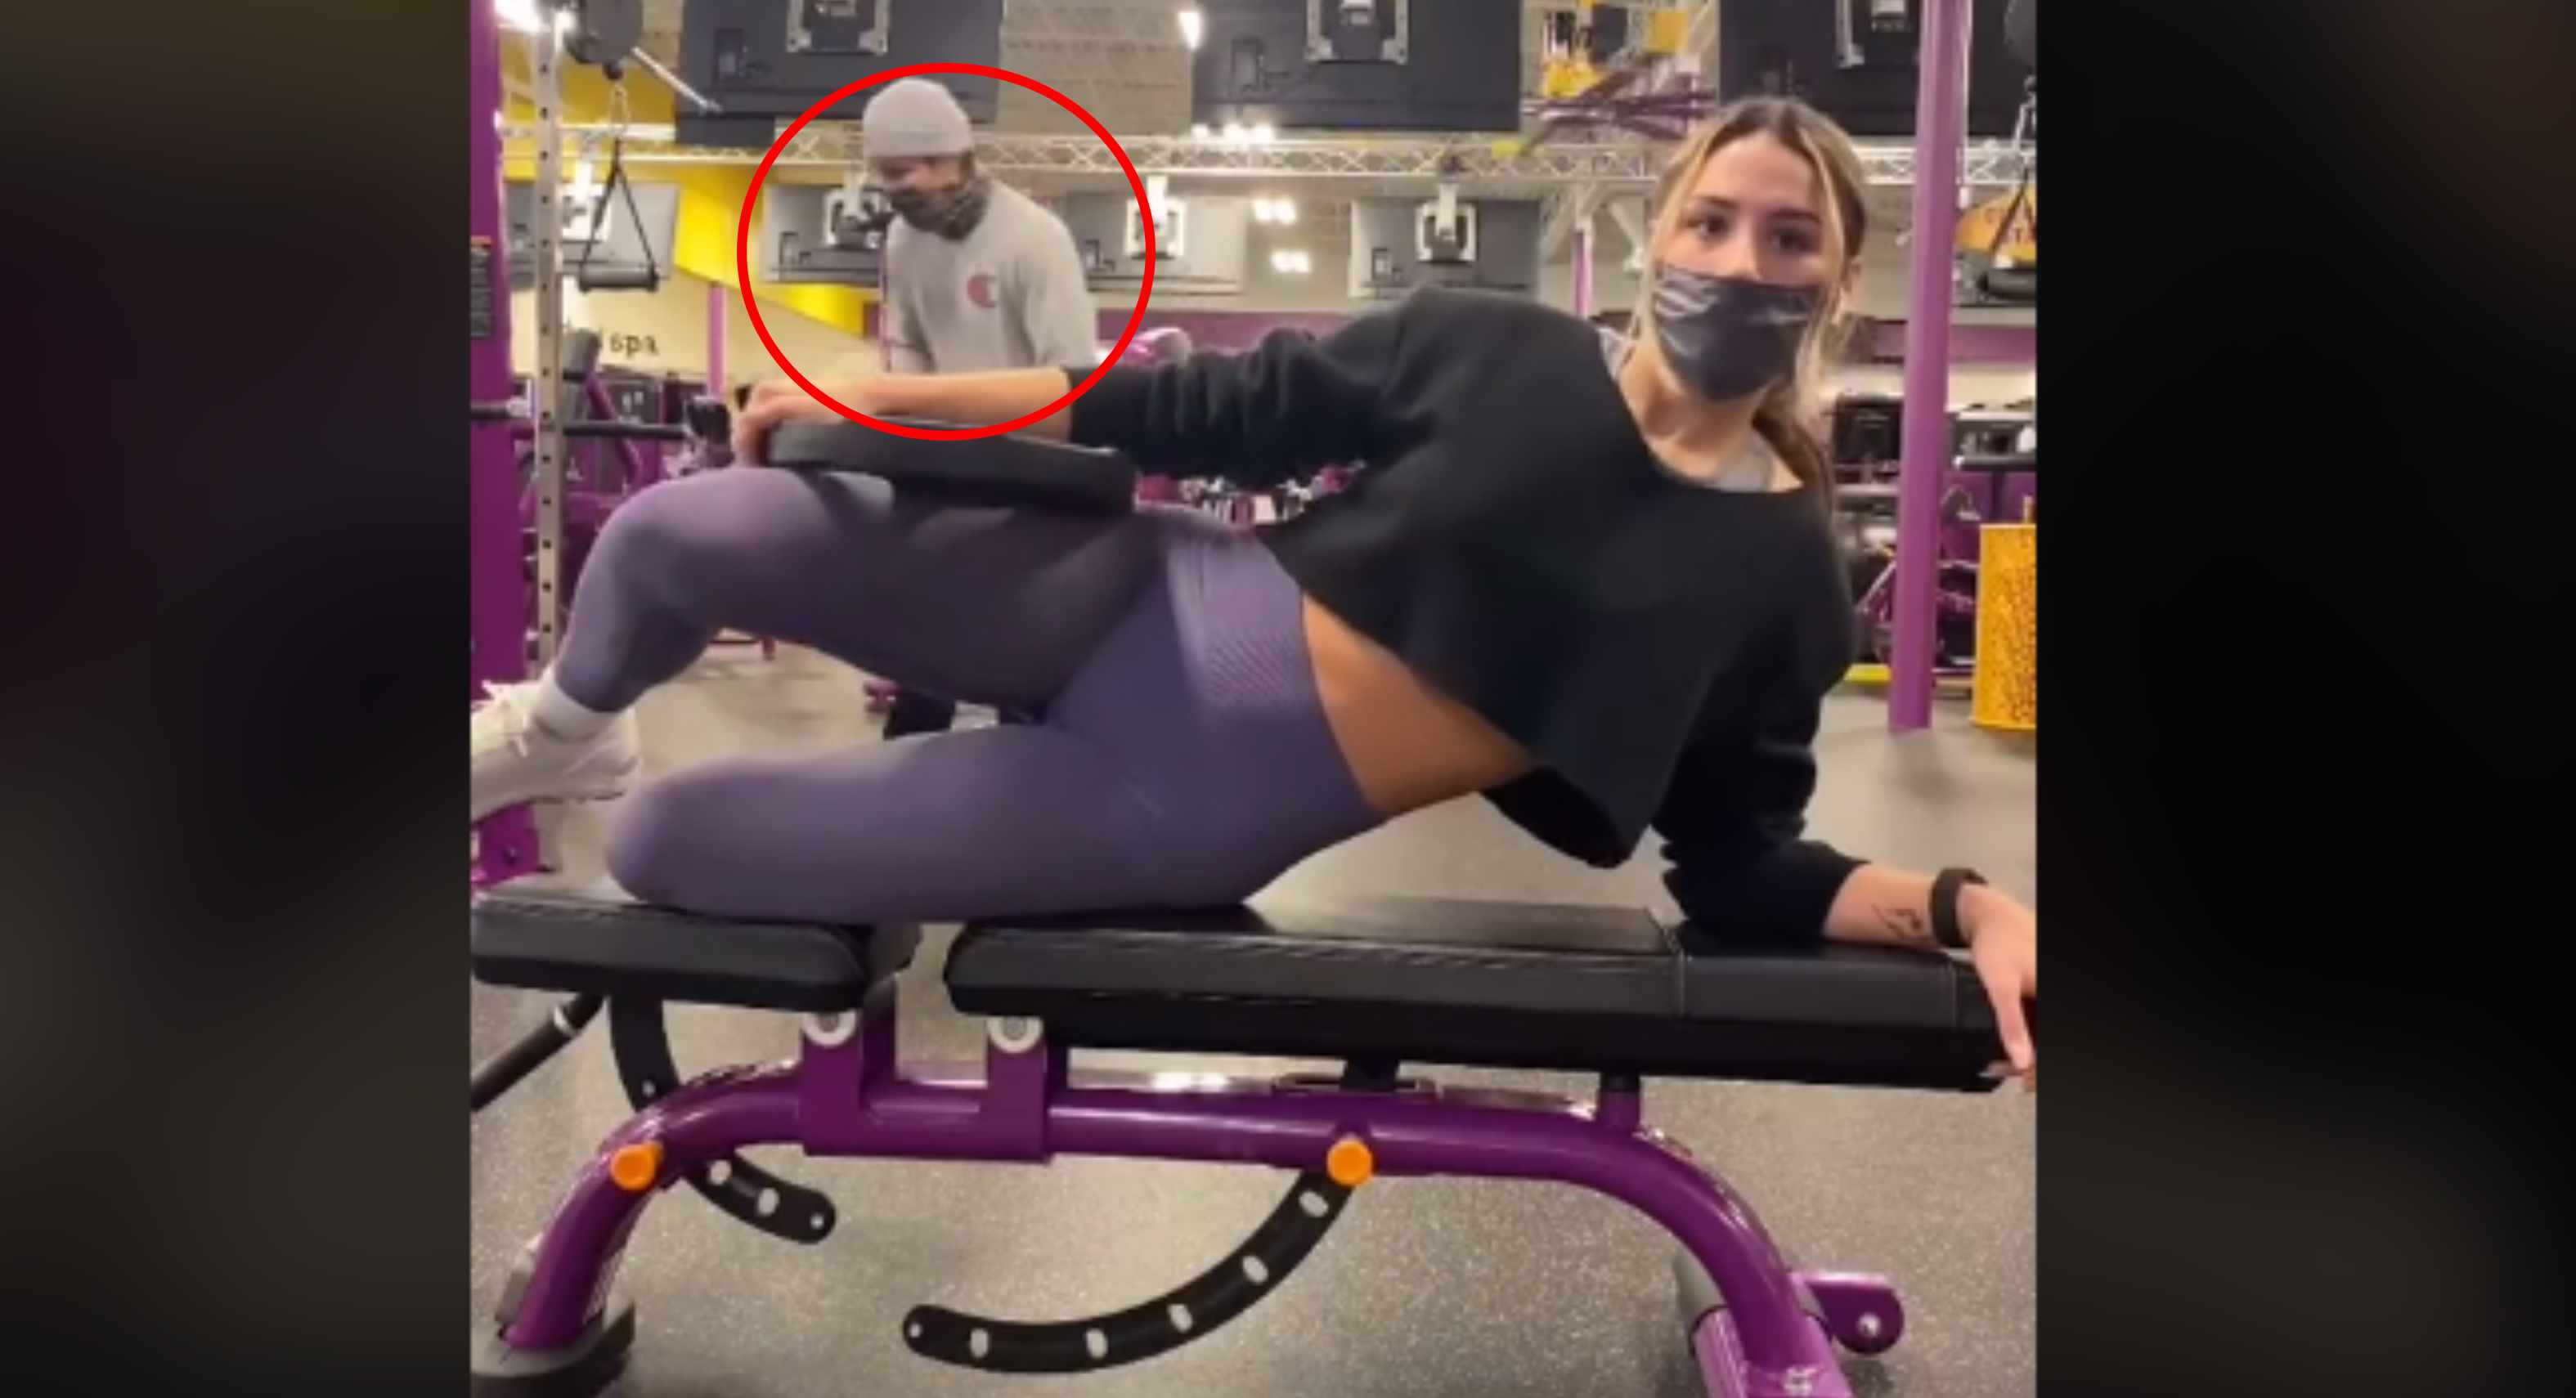 Acosador captado en vídeo de TikTok por una mujer en gimnasio